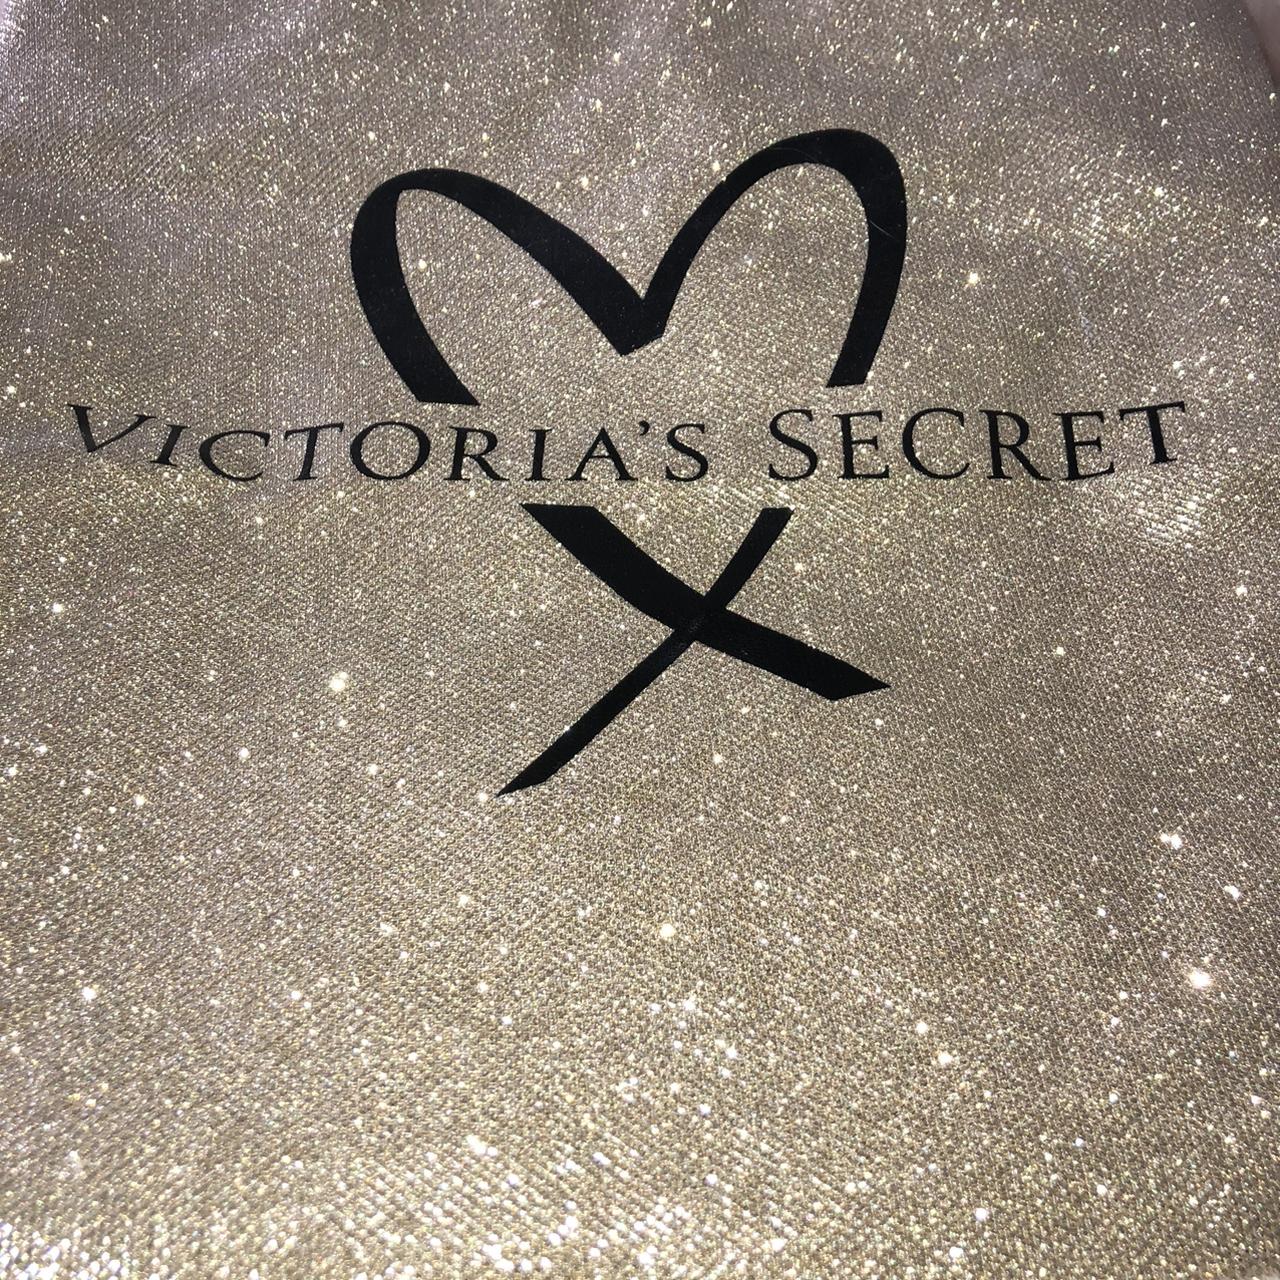 VICTORIA SECRET. Gold glitter tote bag •used once - Depop